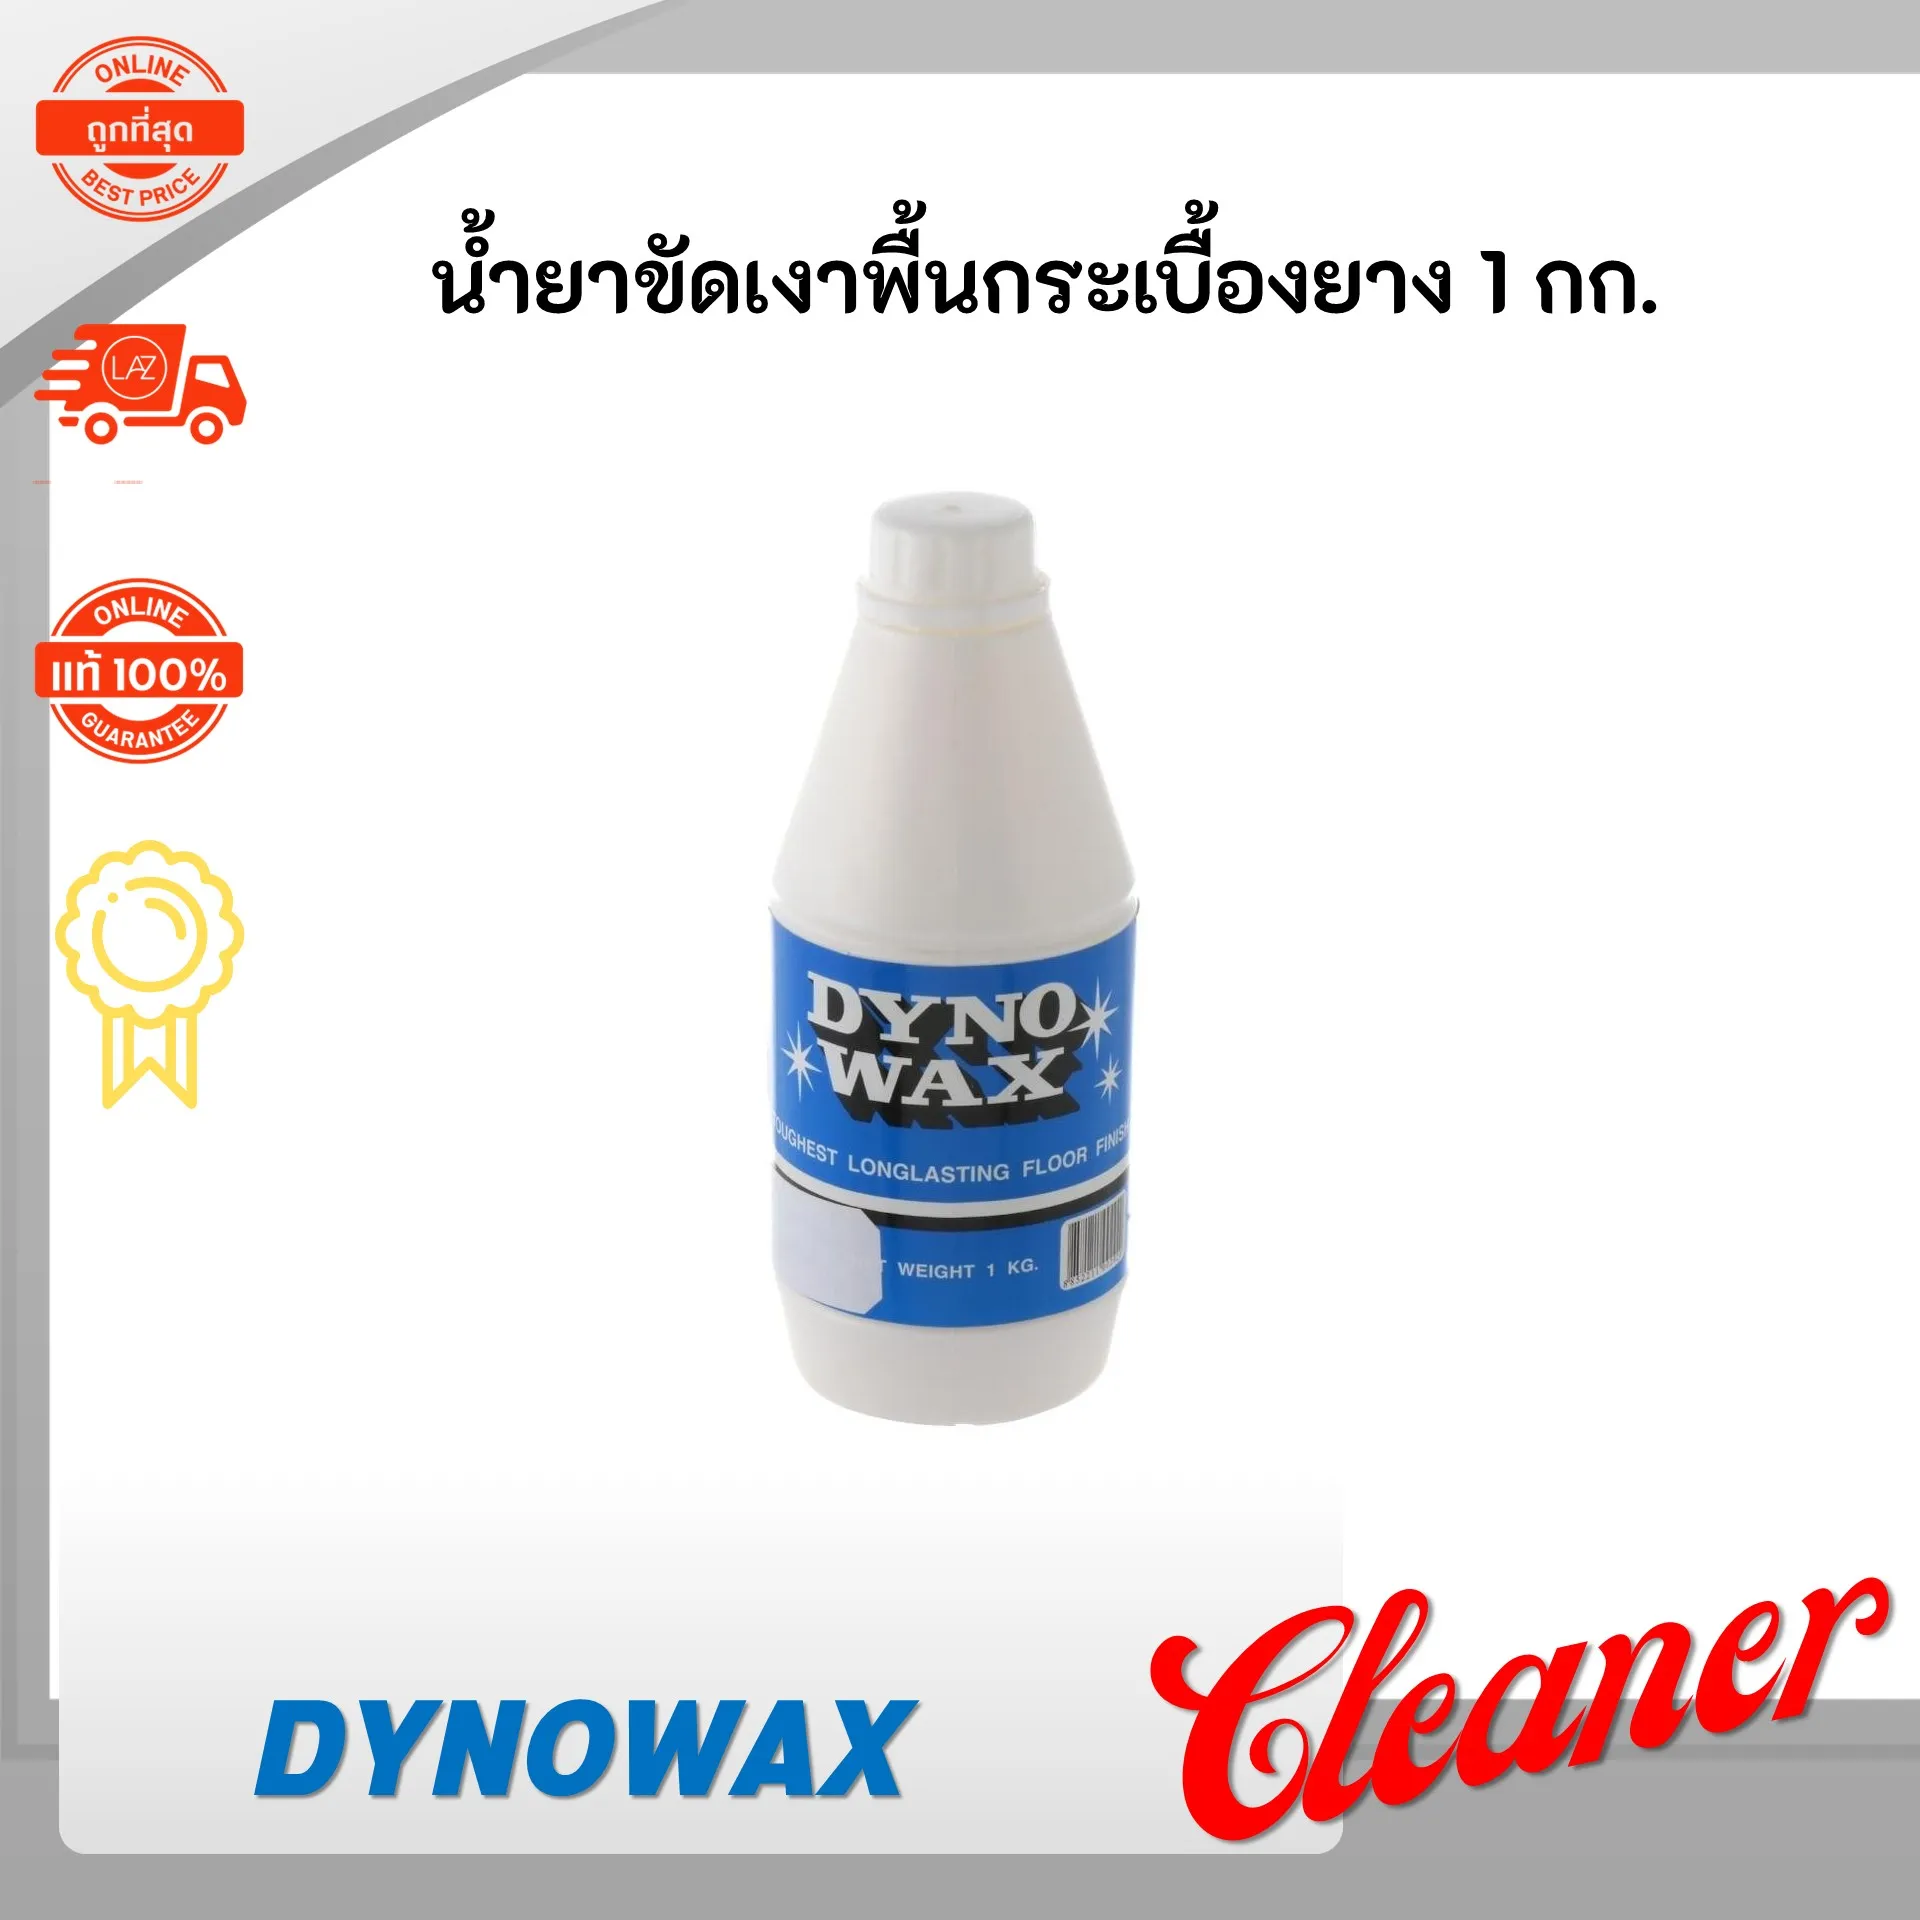 น้ำยาขัดเงา DYNOWAX 1 กก. น้ำยาขัดเงาพลาสติก น้ำยาขัดเงากระเบื้อง น้ำยาขัดเงาพื้นกระเบื้องยาง น้ำยาเคลือบเงาสูตรน้ำ